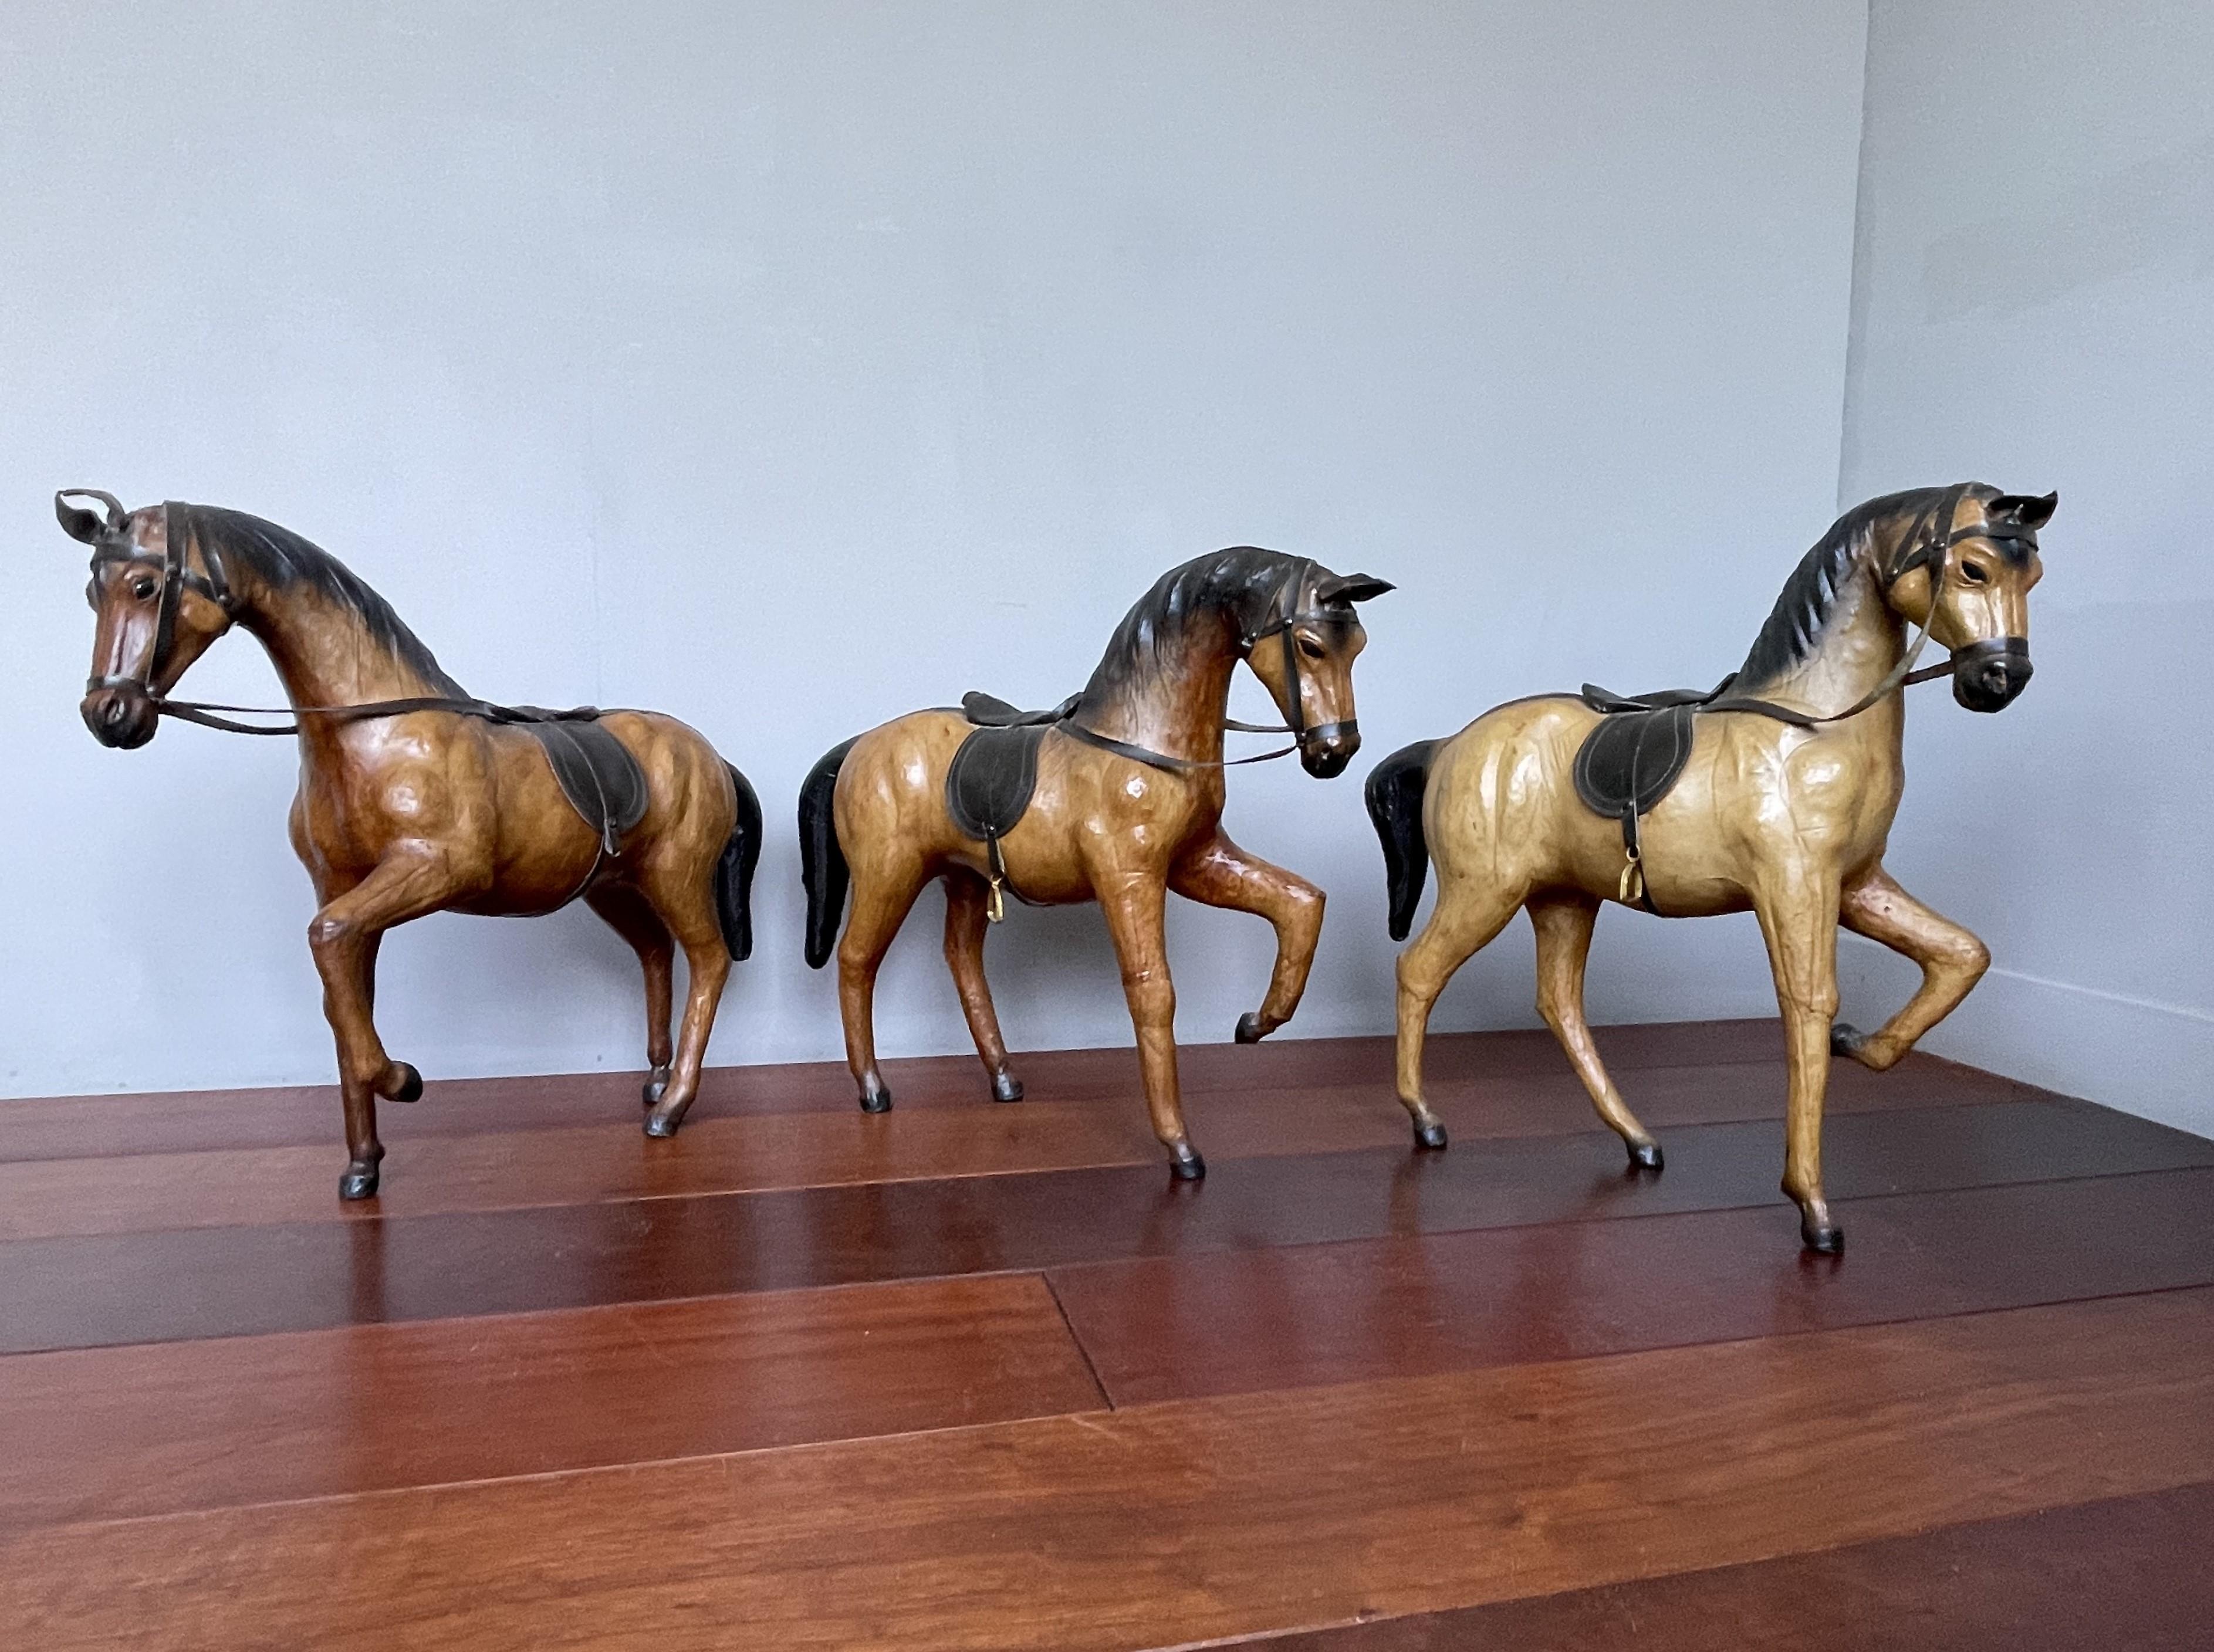 Gute Größe, feinere Qualität und sehr dekorativ Satz von Pferdeskulpturen, in hervorragendem Zustand !

Dieses sehr seltene Set von drei Vollblütern hat sowohl großen ästhetischen als auch dekorativen Wert. Eines dieser seltenen und qualitativ